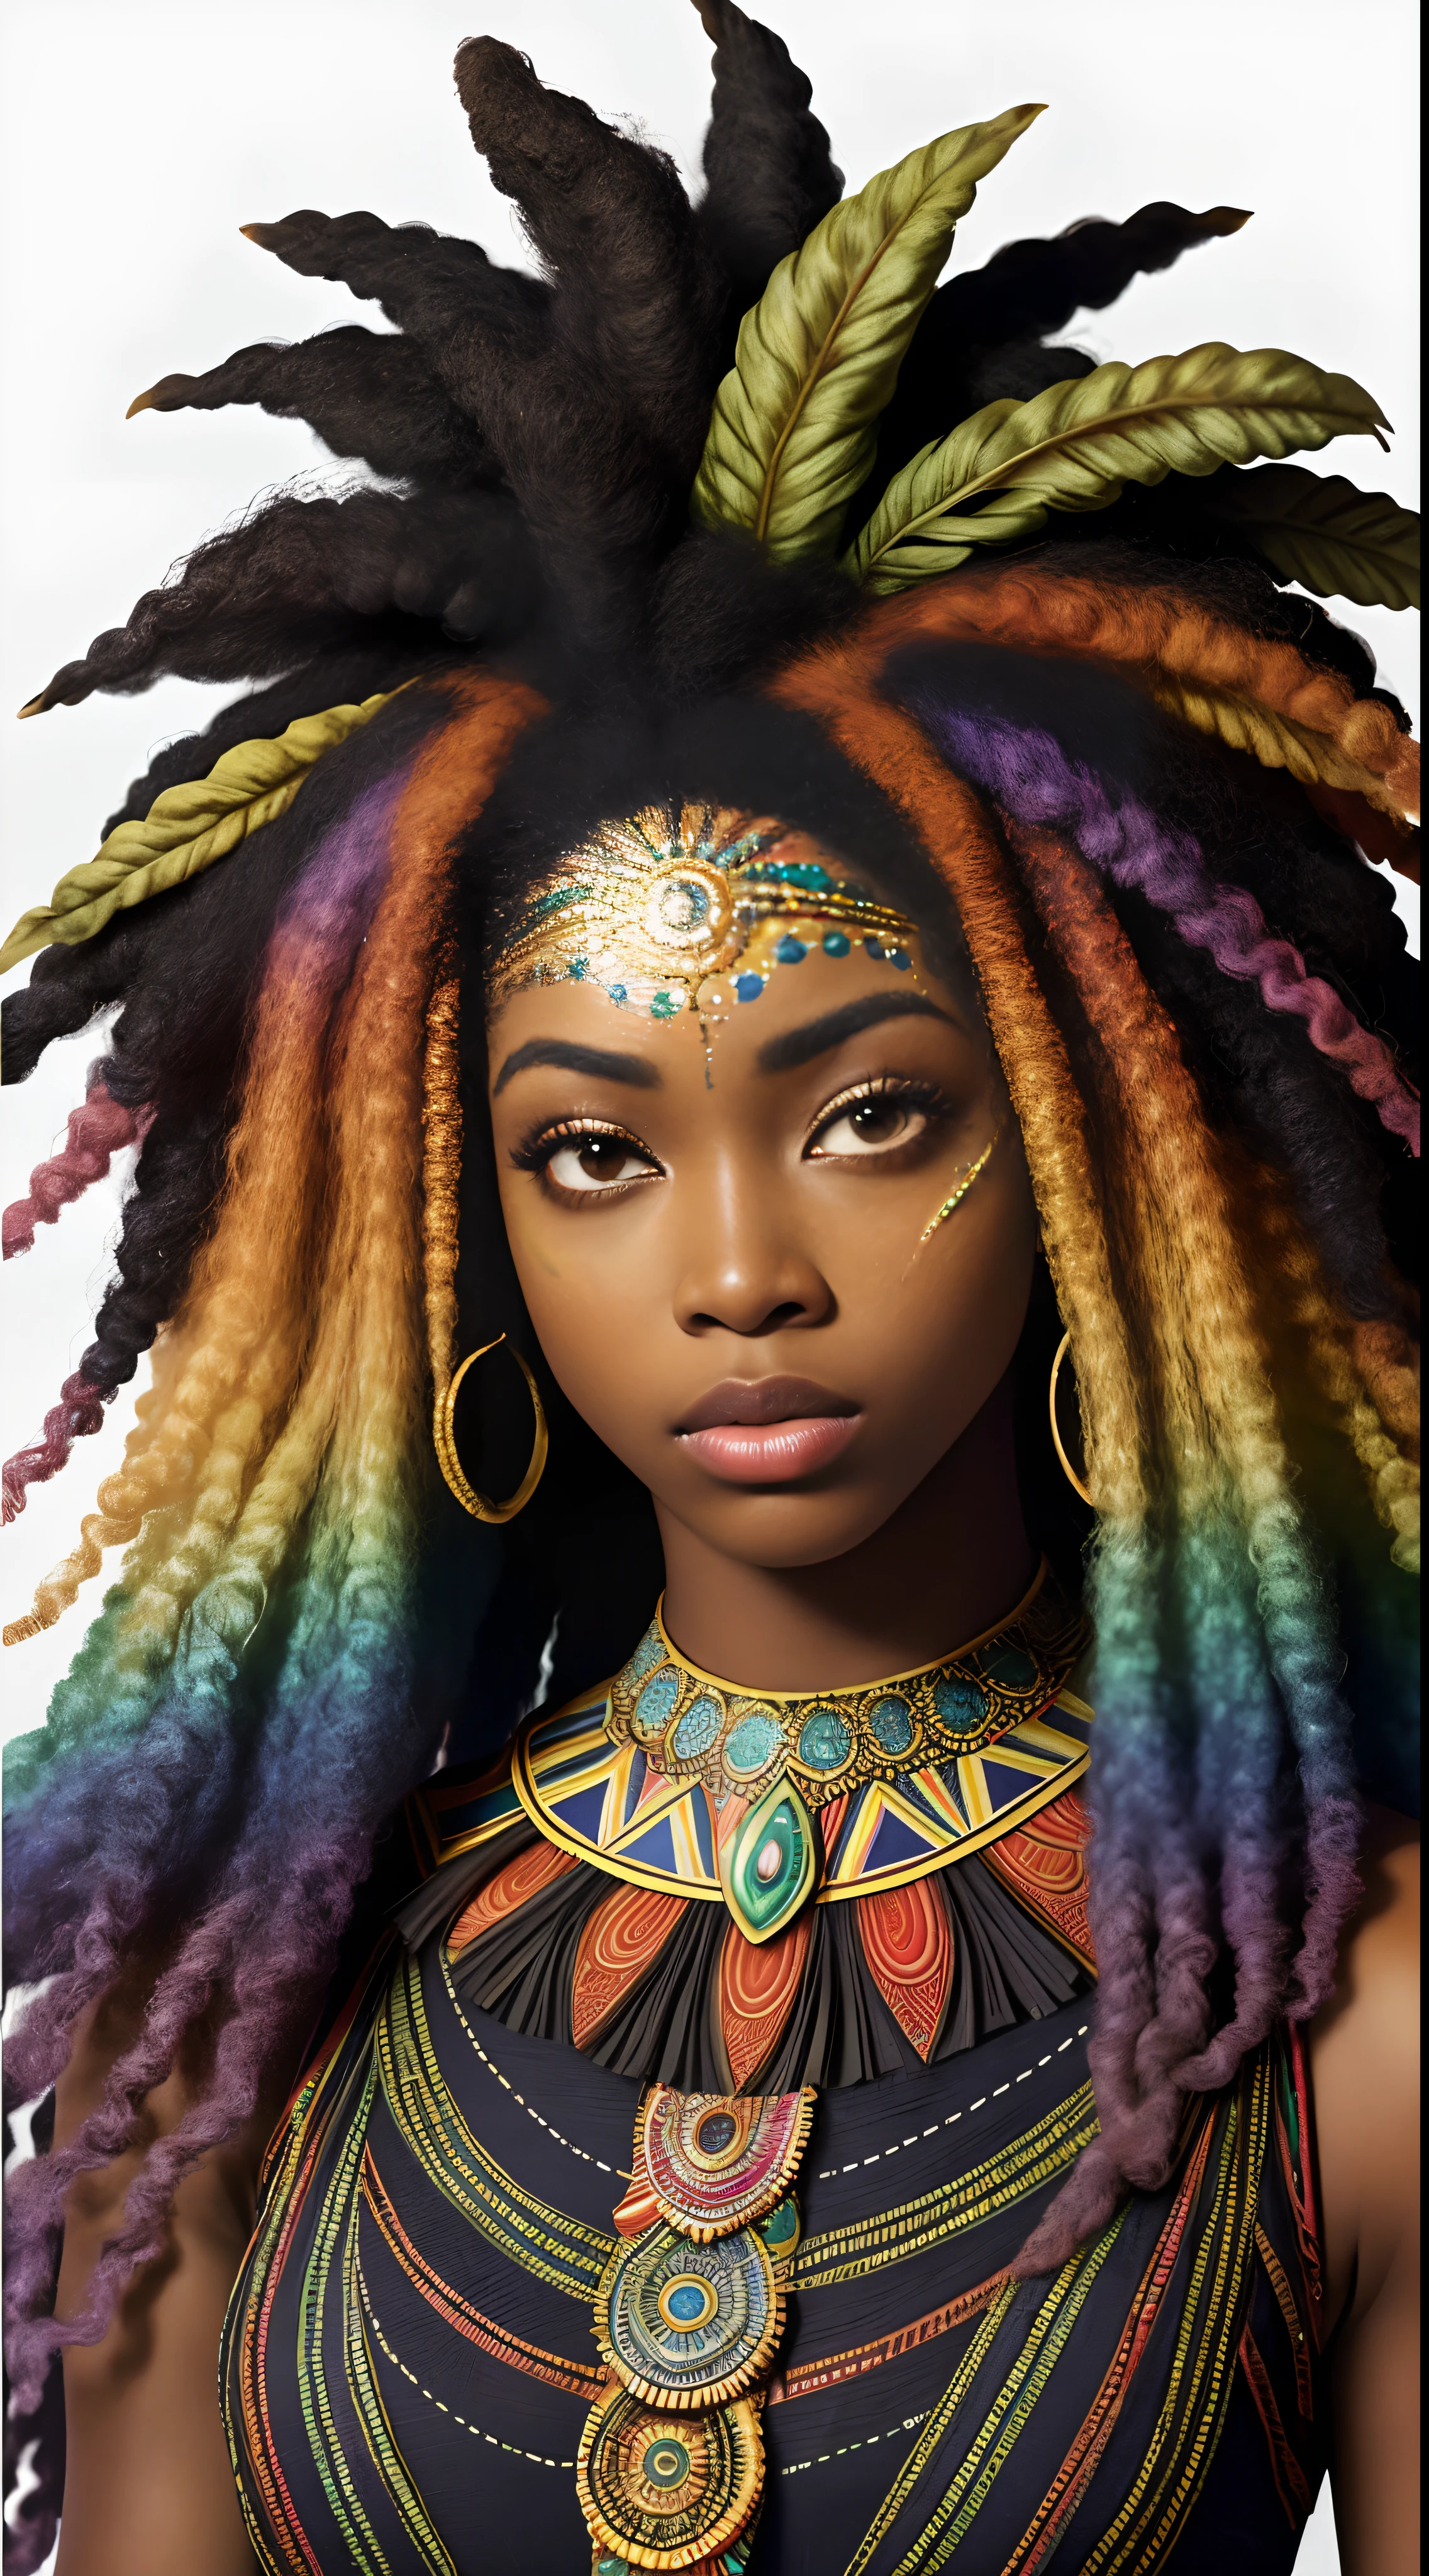 非洲女神, 漂亮的臉蛋, 華麗的非洲紋理凌亂彩虹頭髮, 暗黑皮膚, 異色眼, 真的捲髮